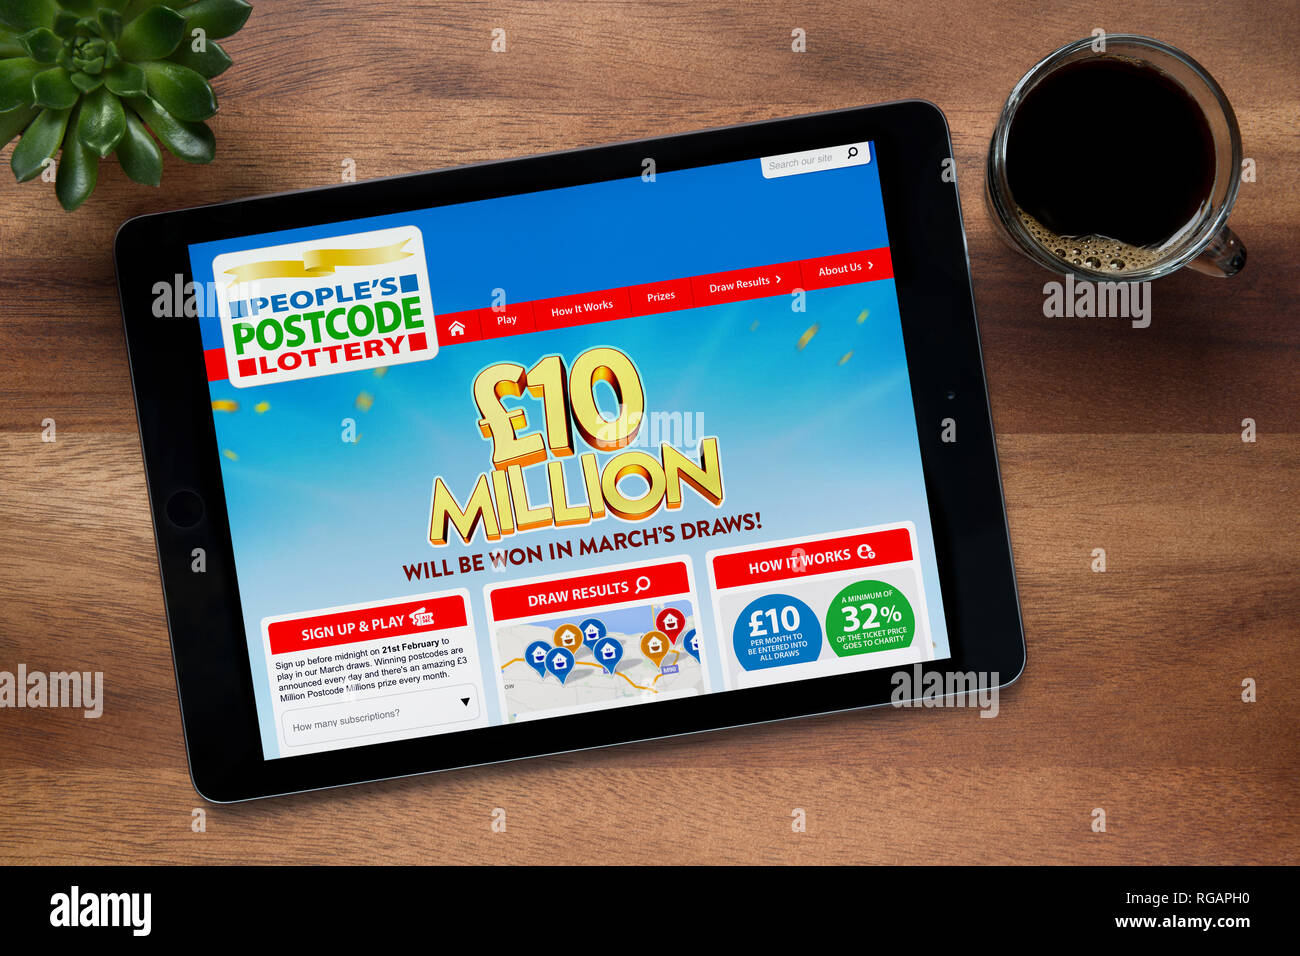 Die Website der Menschen Postcodelotterie ist auf einem iPad Tablet gesehen, auf einer hölzernen Tisch zusammen mit einem Espresso und einem Haus Anlage (nur redaktionell) Stockfoto